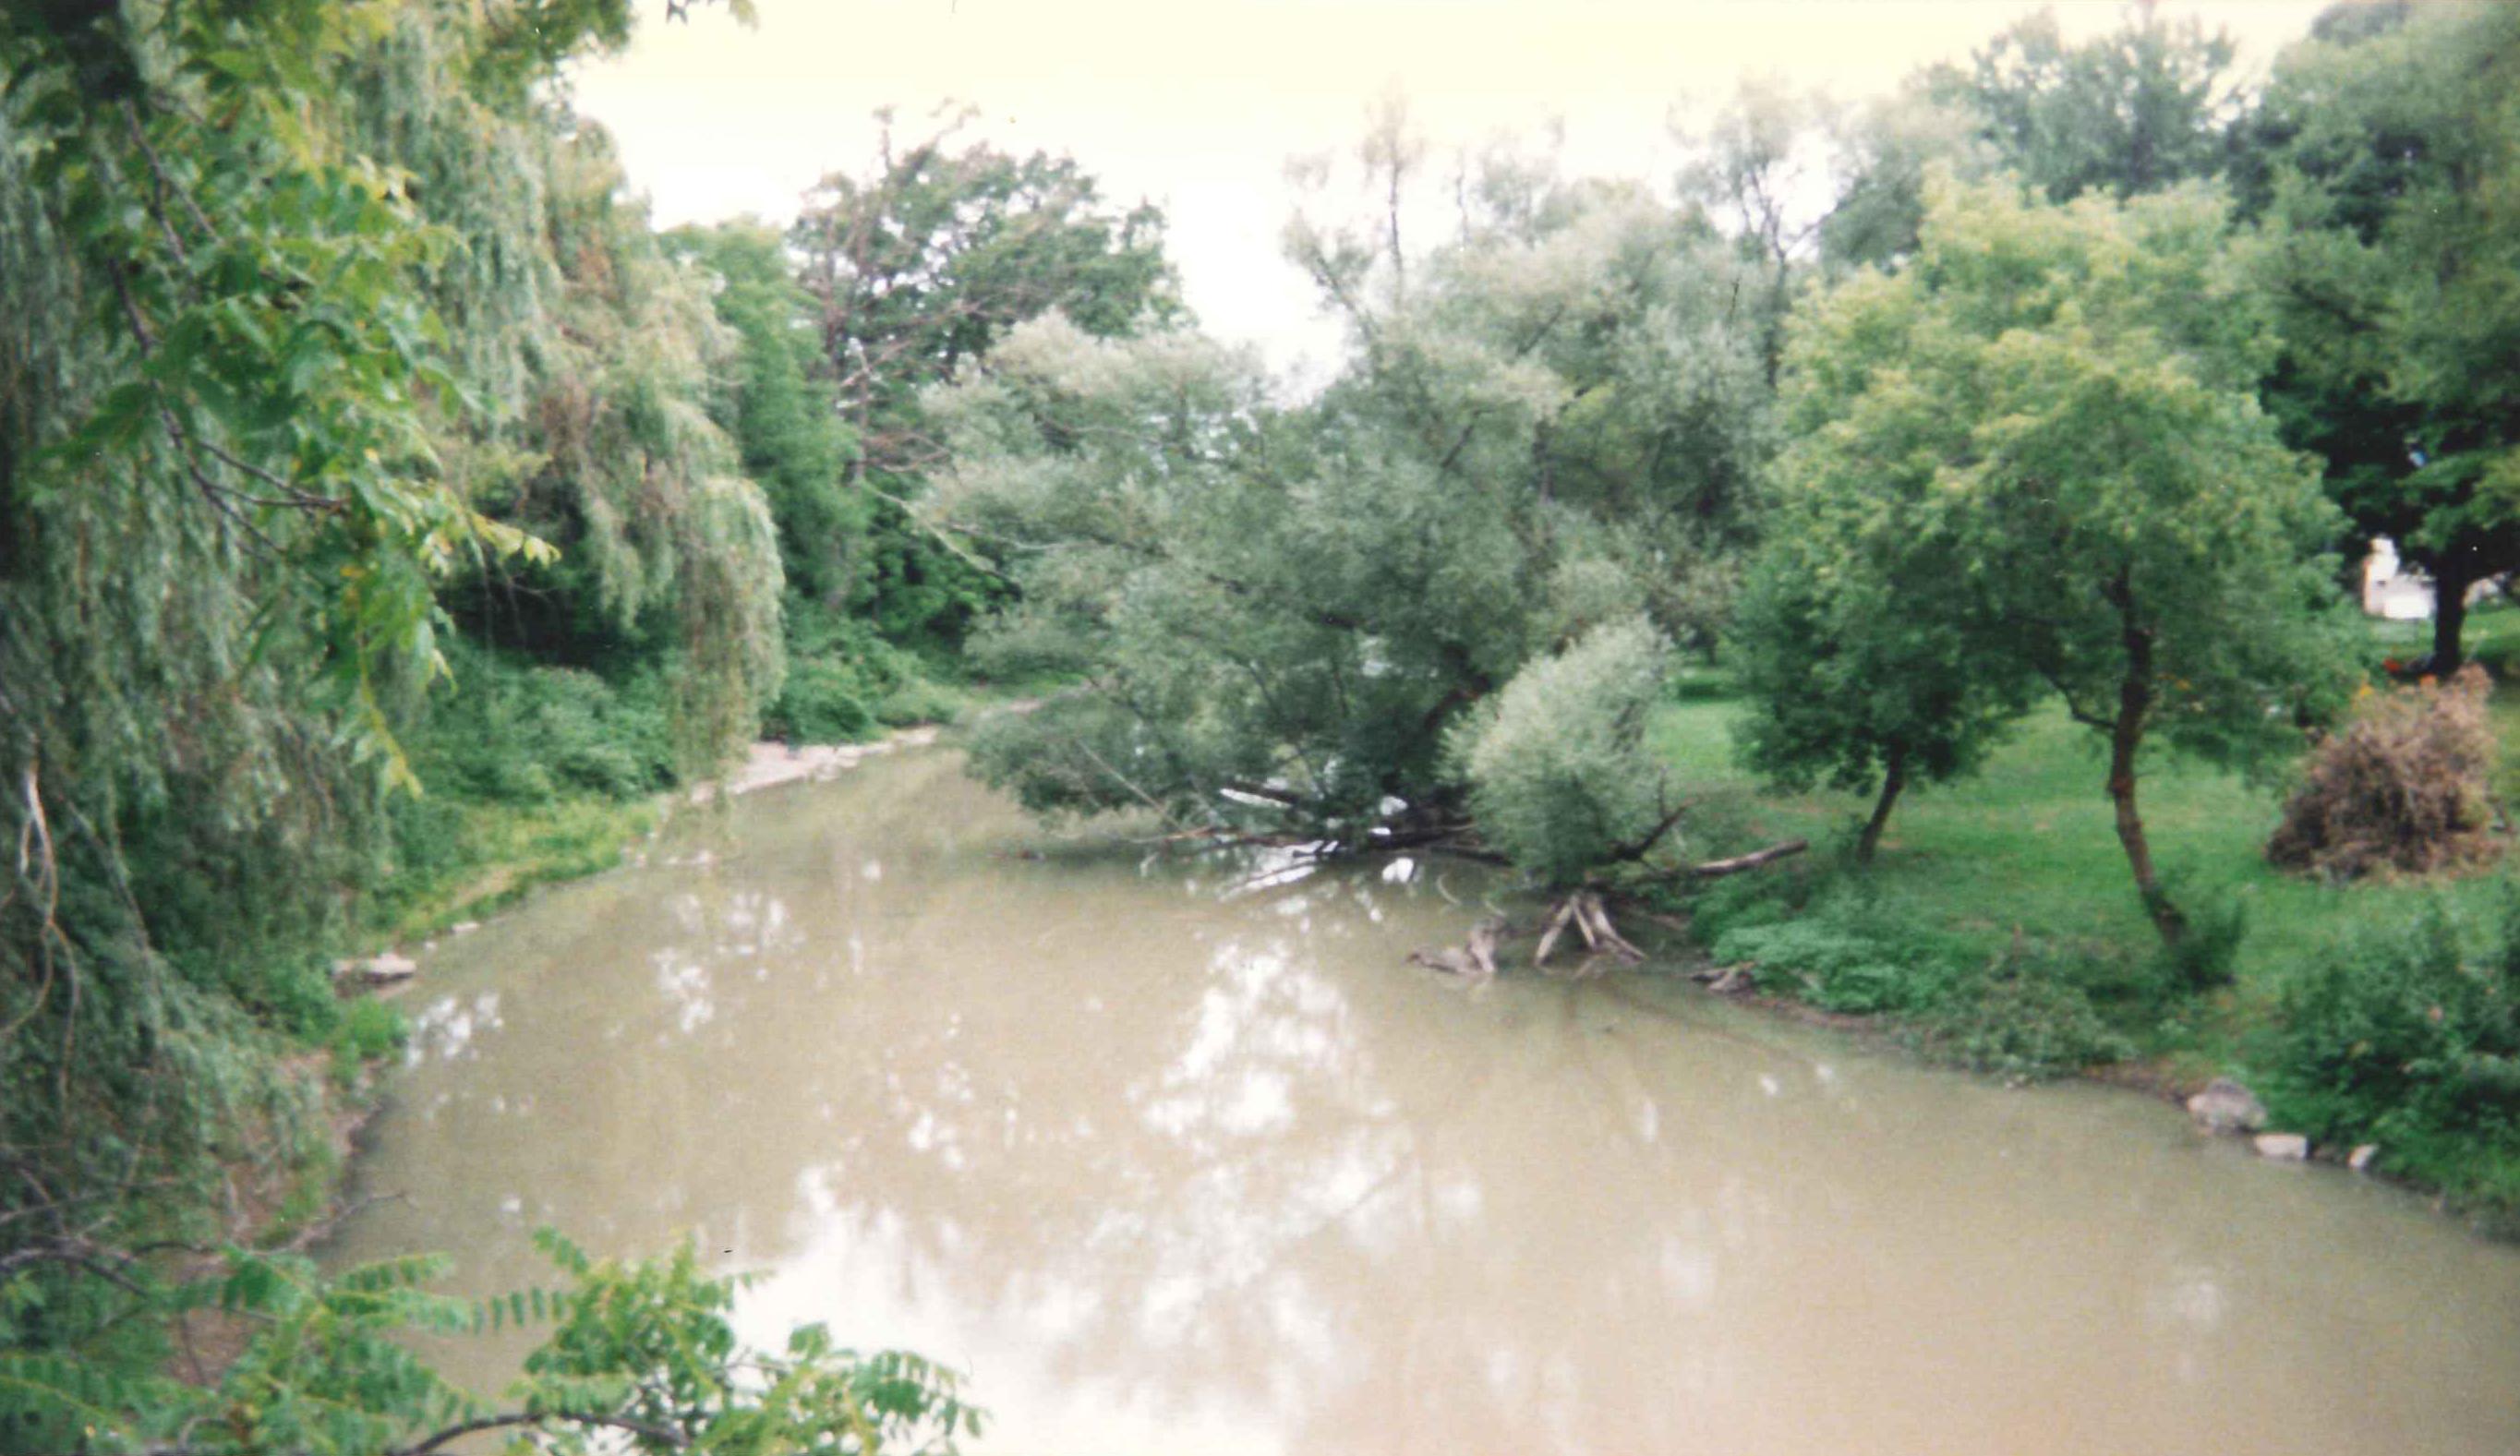 Photograph of the Tonawanda Creek at Rapids, NY (RAPN6) looking downstream